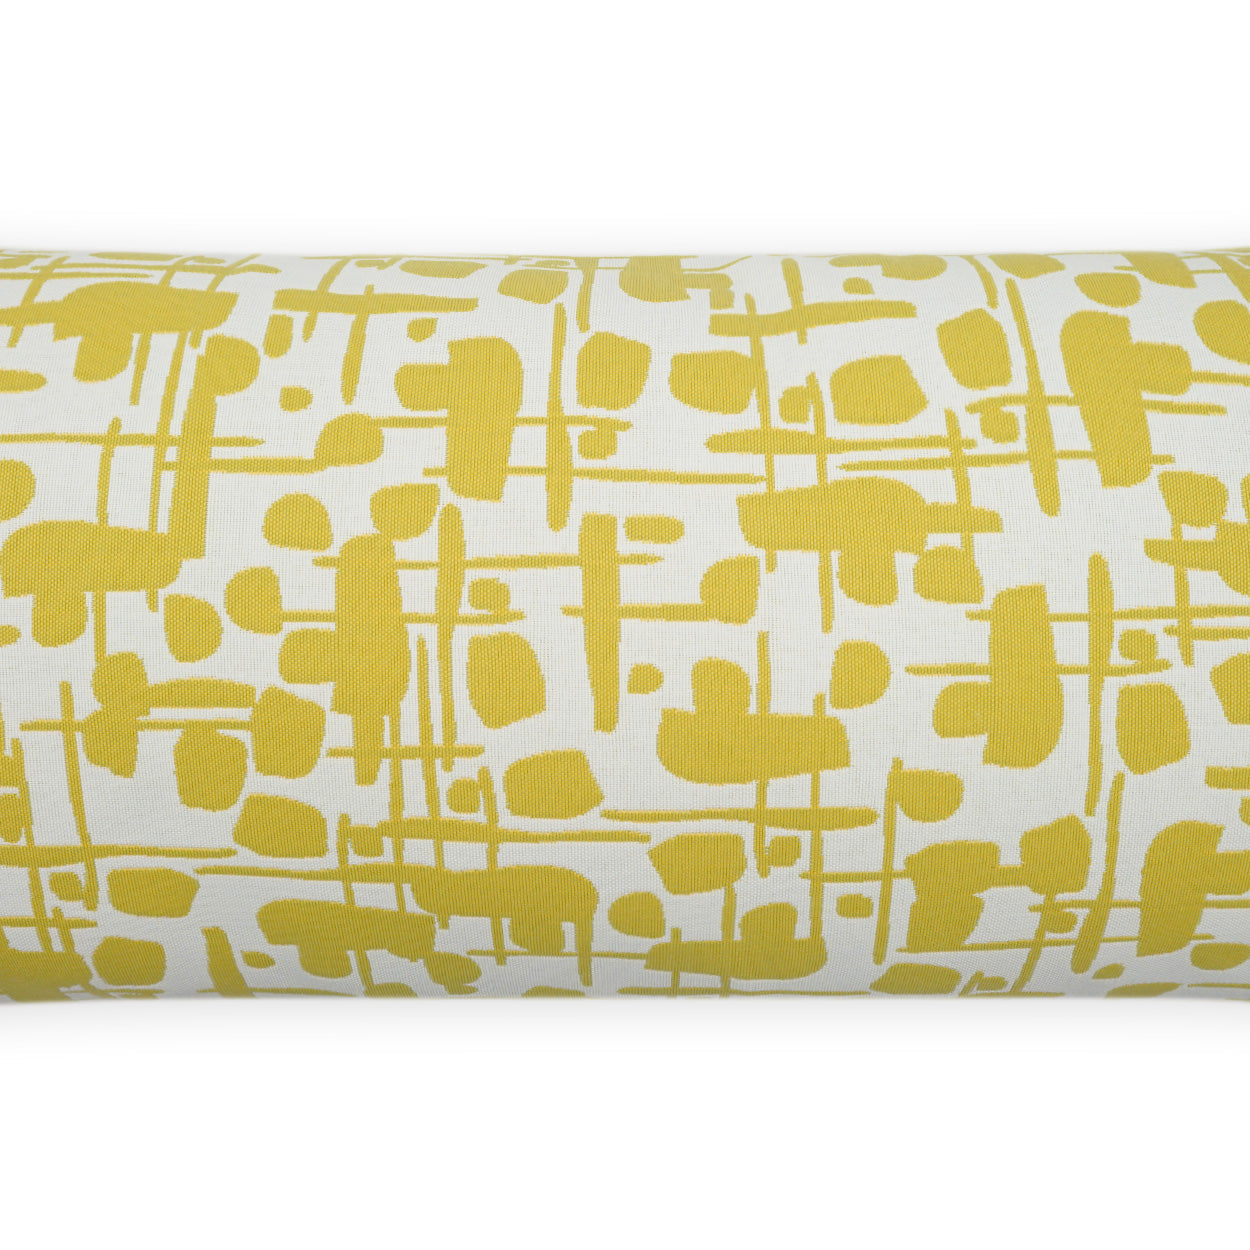 Outdoor Jargon Lumbar Pillow - Citron